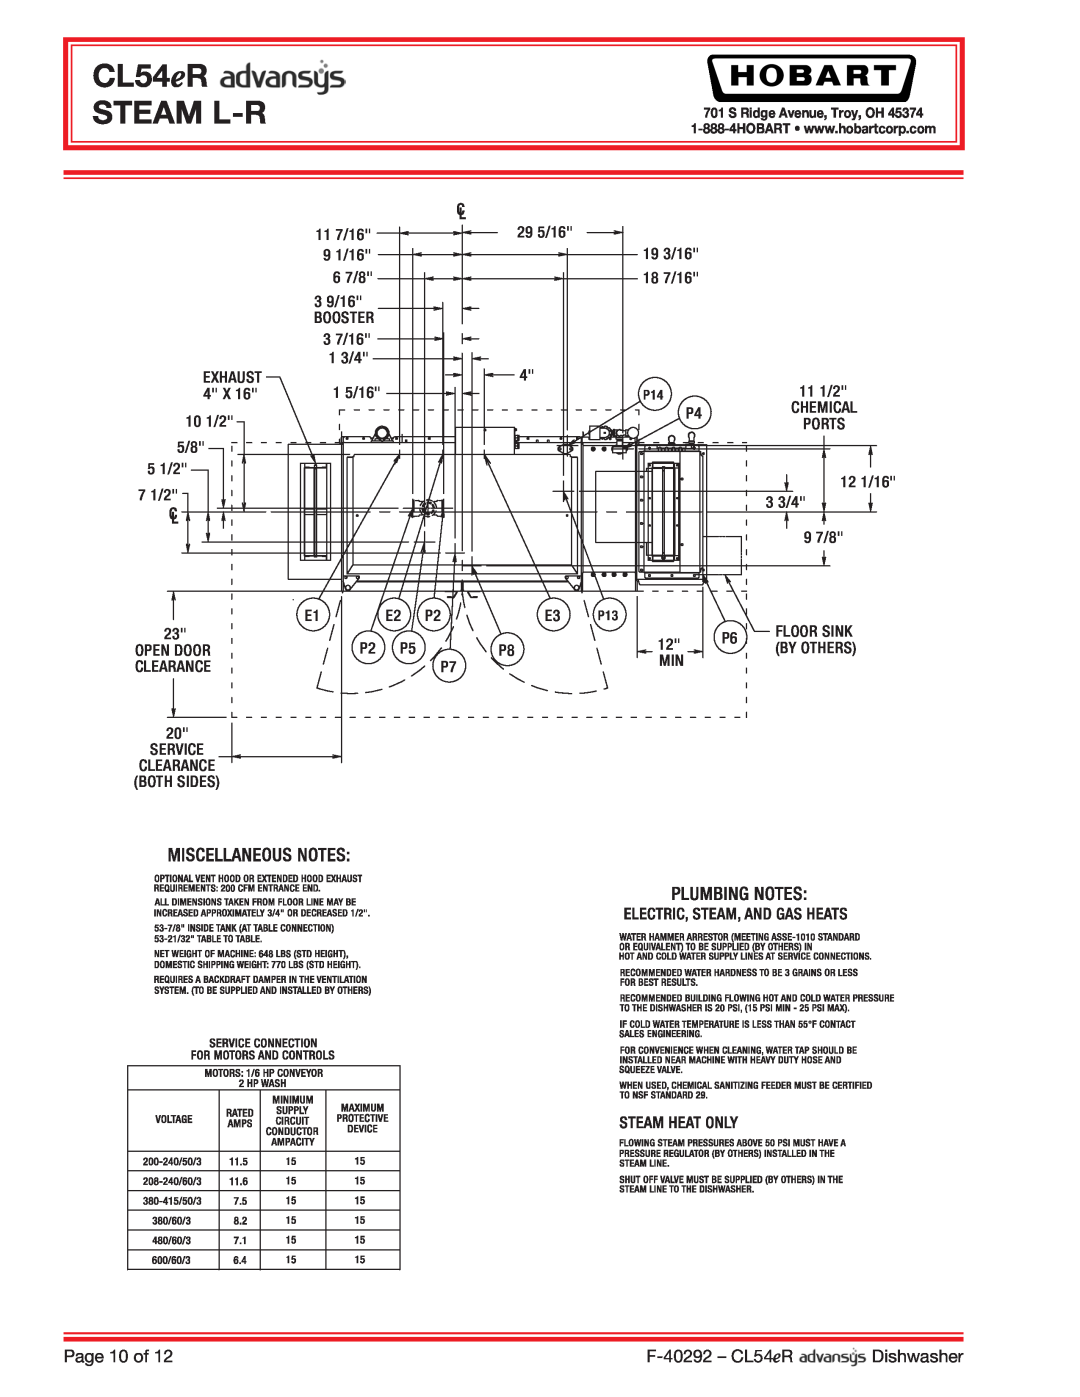 Hobart CL54ER dimensions CL54eR STEAM L-R, Page 10 of, F-40292- CL54eR, Dishwasher 